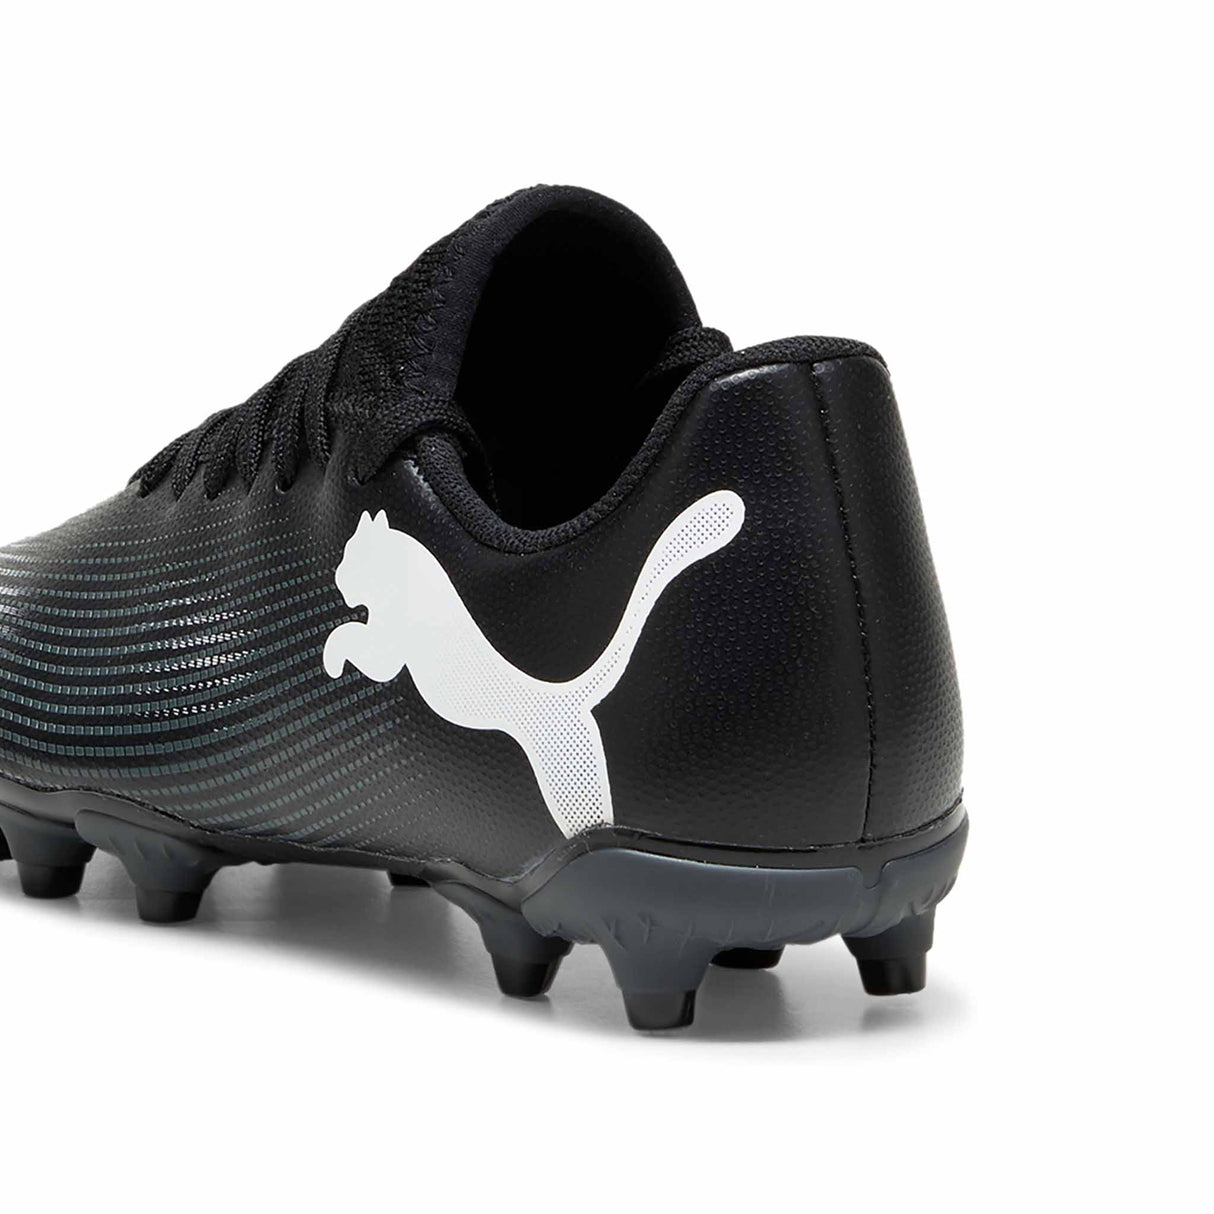 Puma Future 7 Play FG/AG chaussures de soccer à crampons junior - Puma Black / Puma White